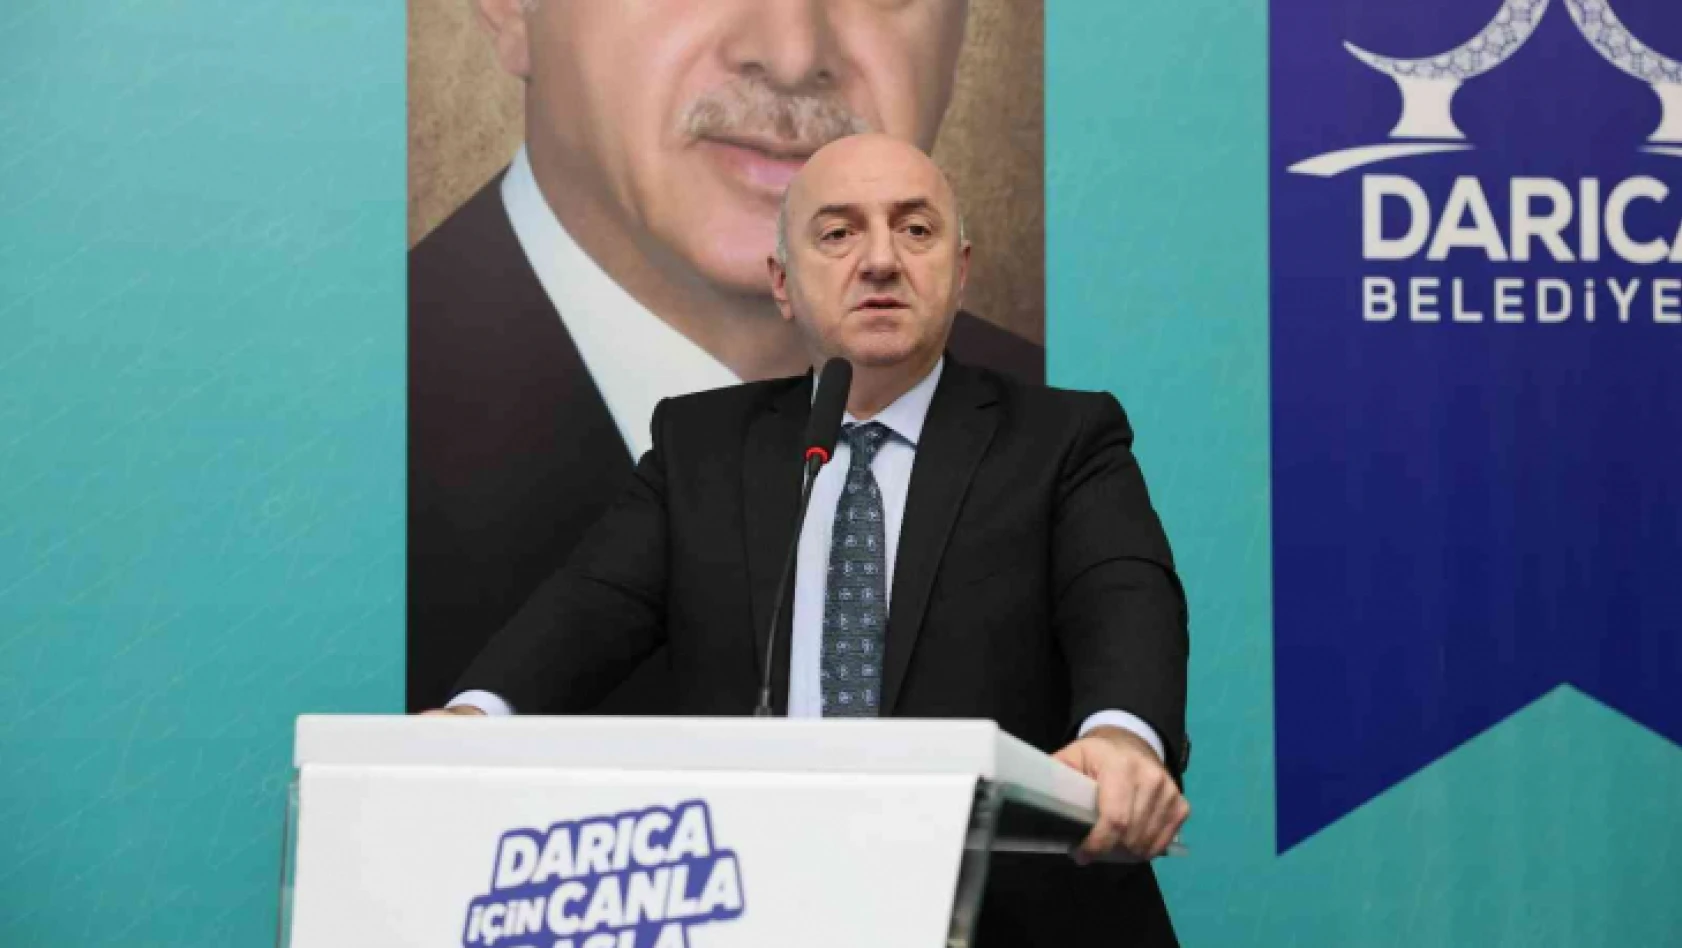 Bıyık: 'Cumhur ittifakı devrilirse Darıca'da kimin belediye başkan adayı olduğunun hiçbir anlamı yok'